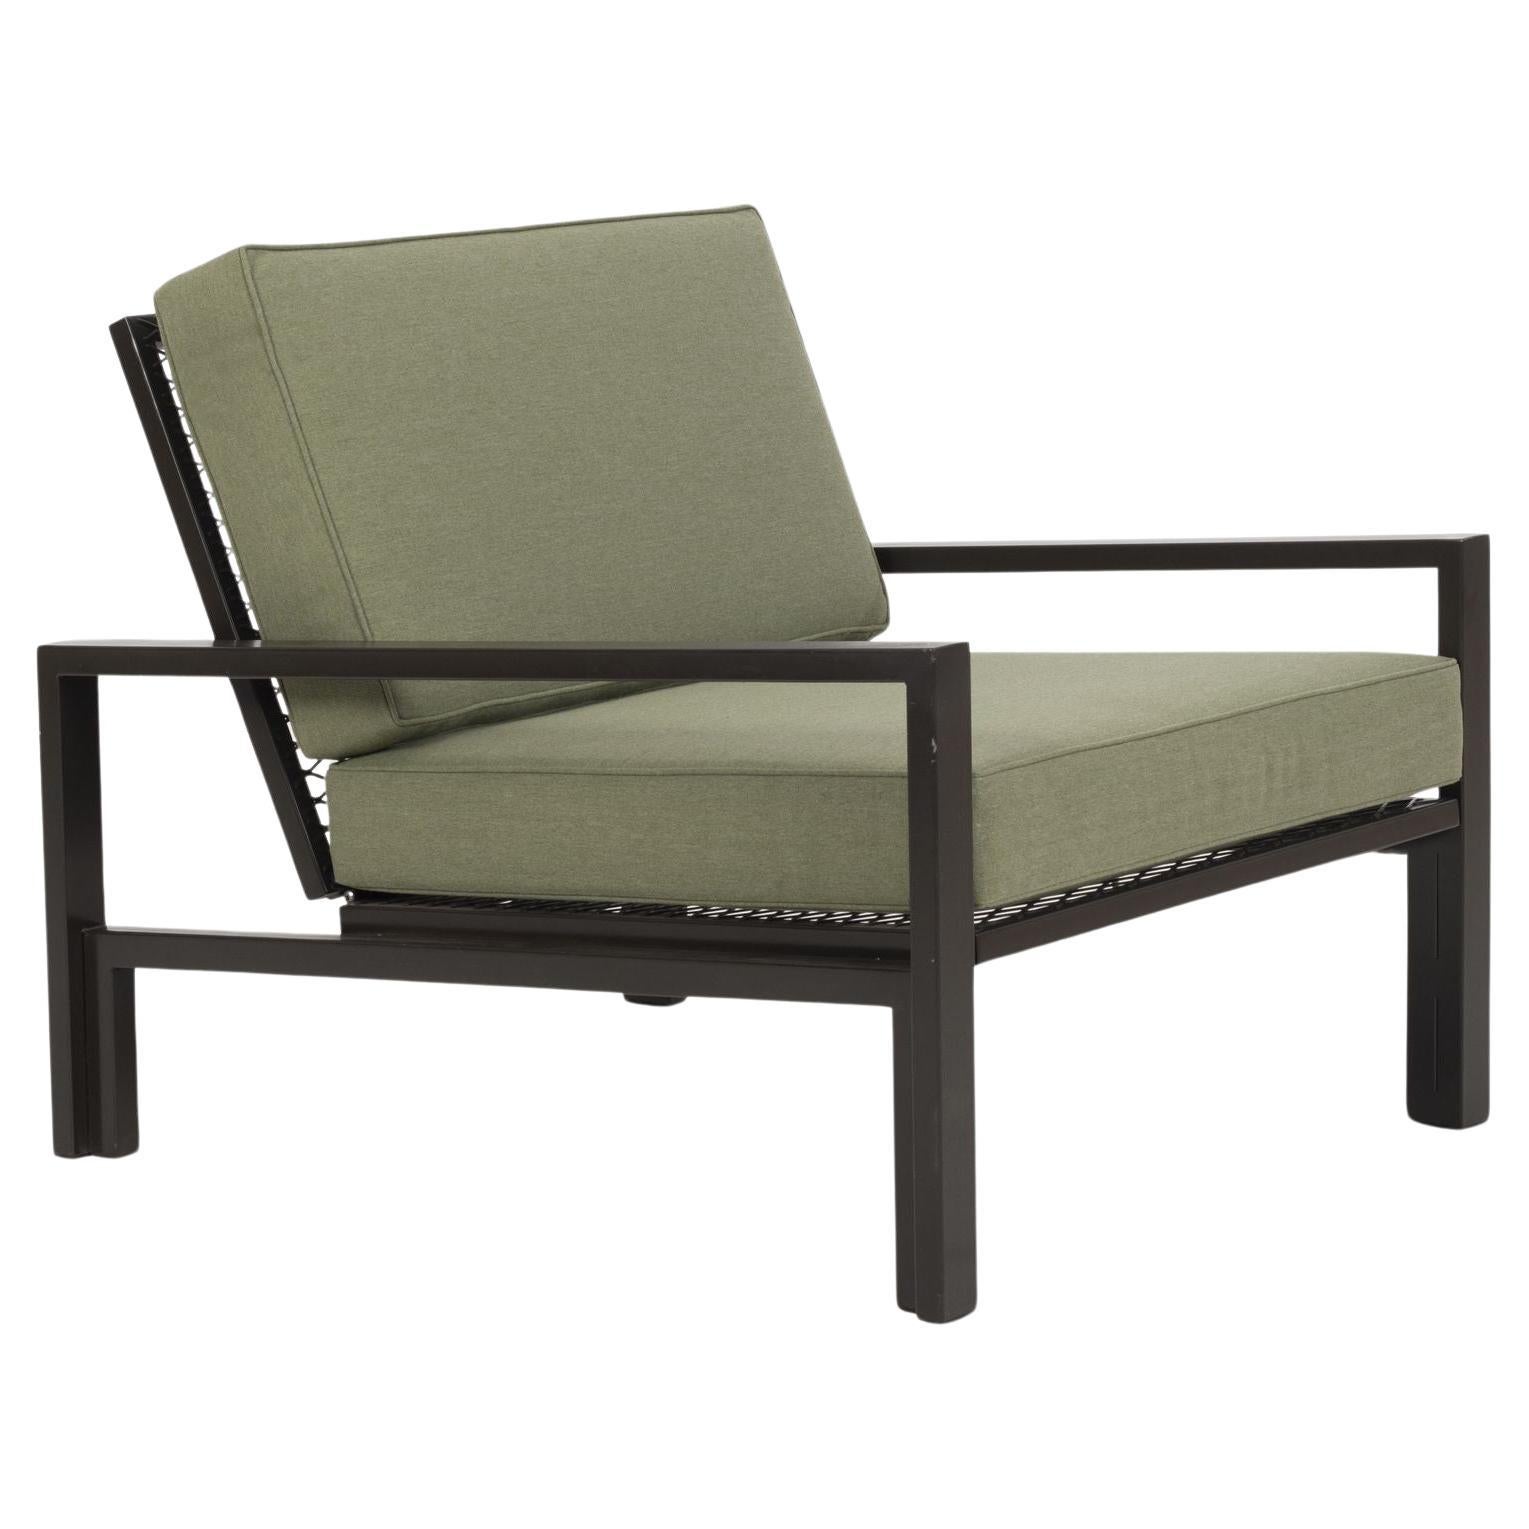 Van Keppel Green "VKG" Outdoor/Indoor Lounge Chair Design For Sale